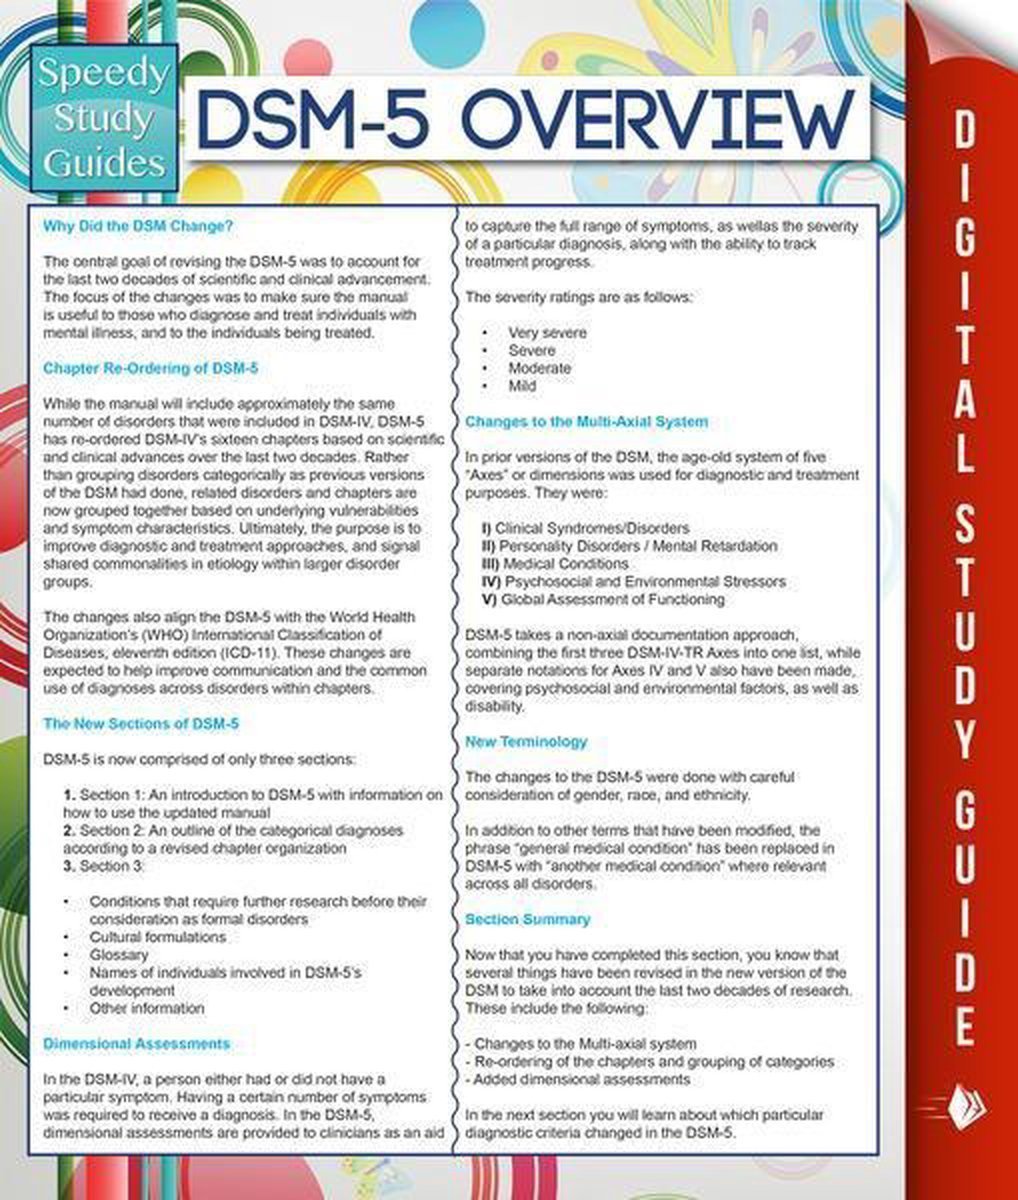 dsm-5-overview-speedy-study-guides-van-in-de-categorie-boek